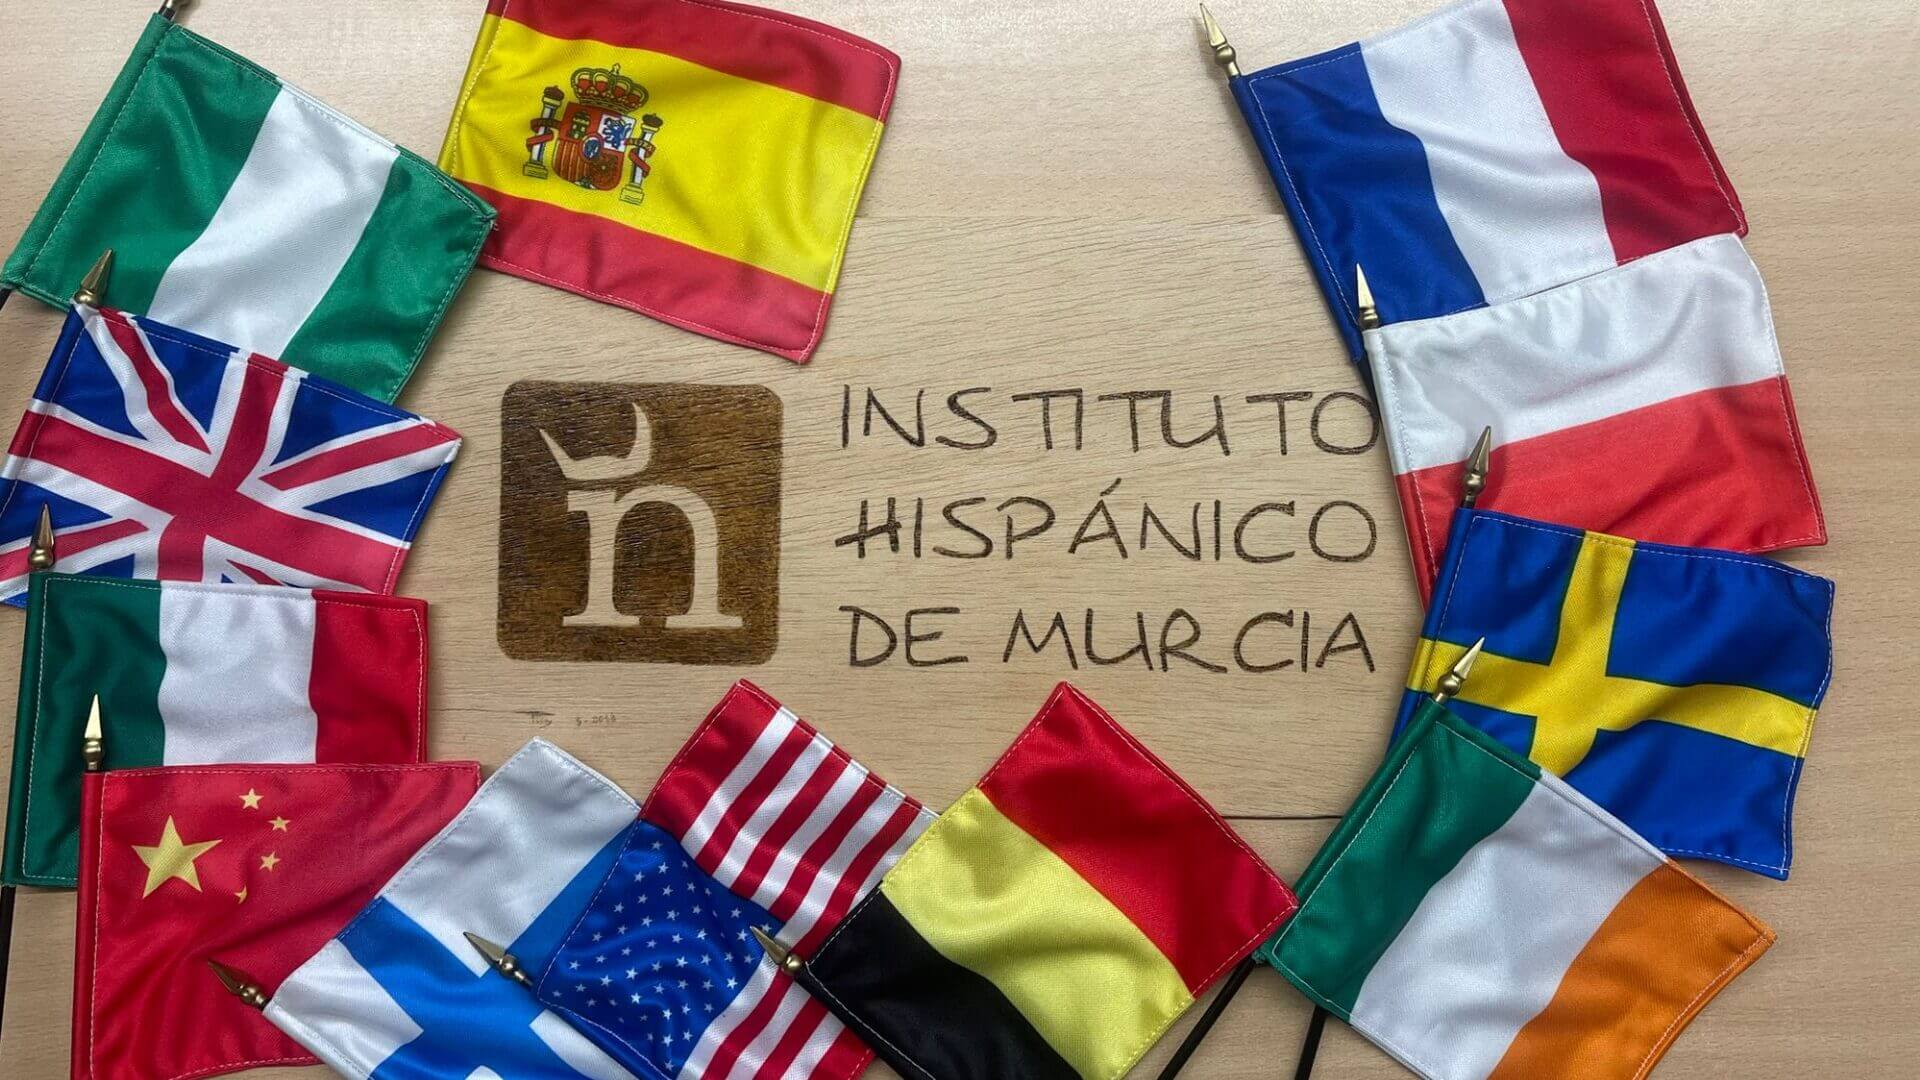 Instituto Hispánico de Murcia - NIE i obywatelstwo: kompletny przewodnik, jak je uzyskać